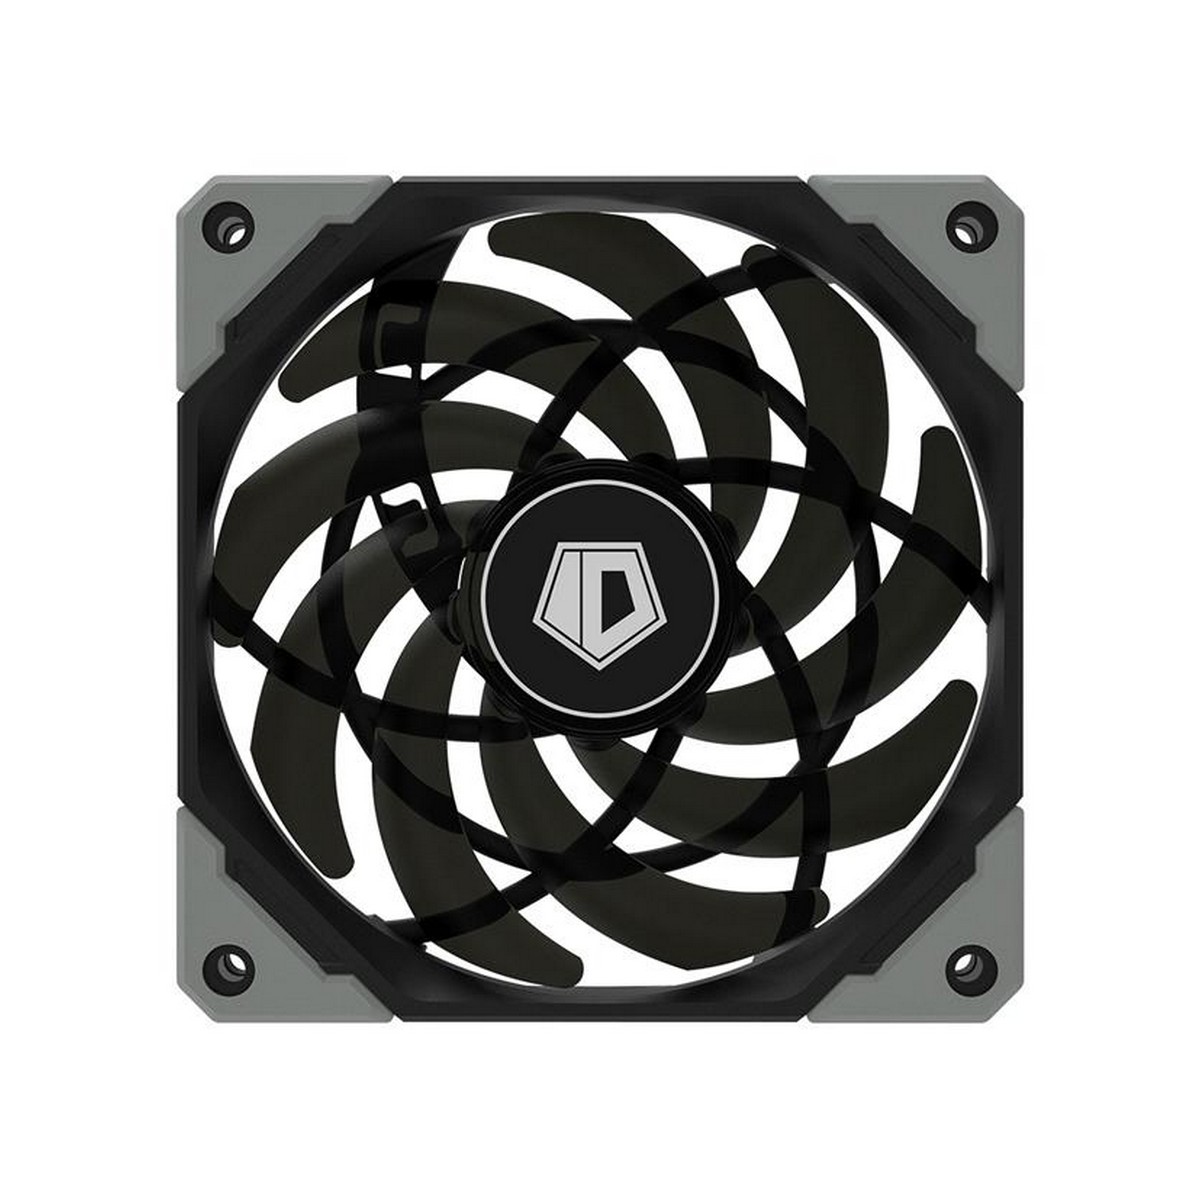 Вентилятор ID-Cooling NO-12015-XT, 120x120x15мм, 4-pin PWM, серый с черным